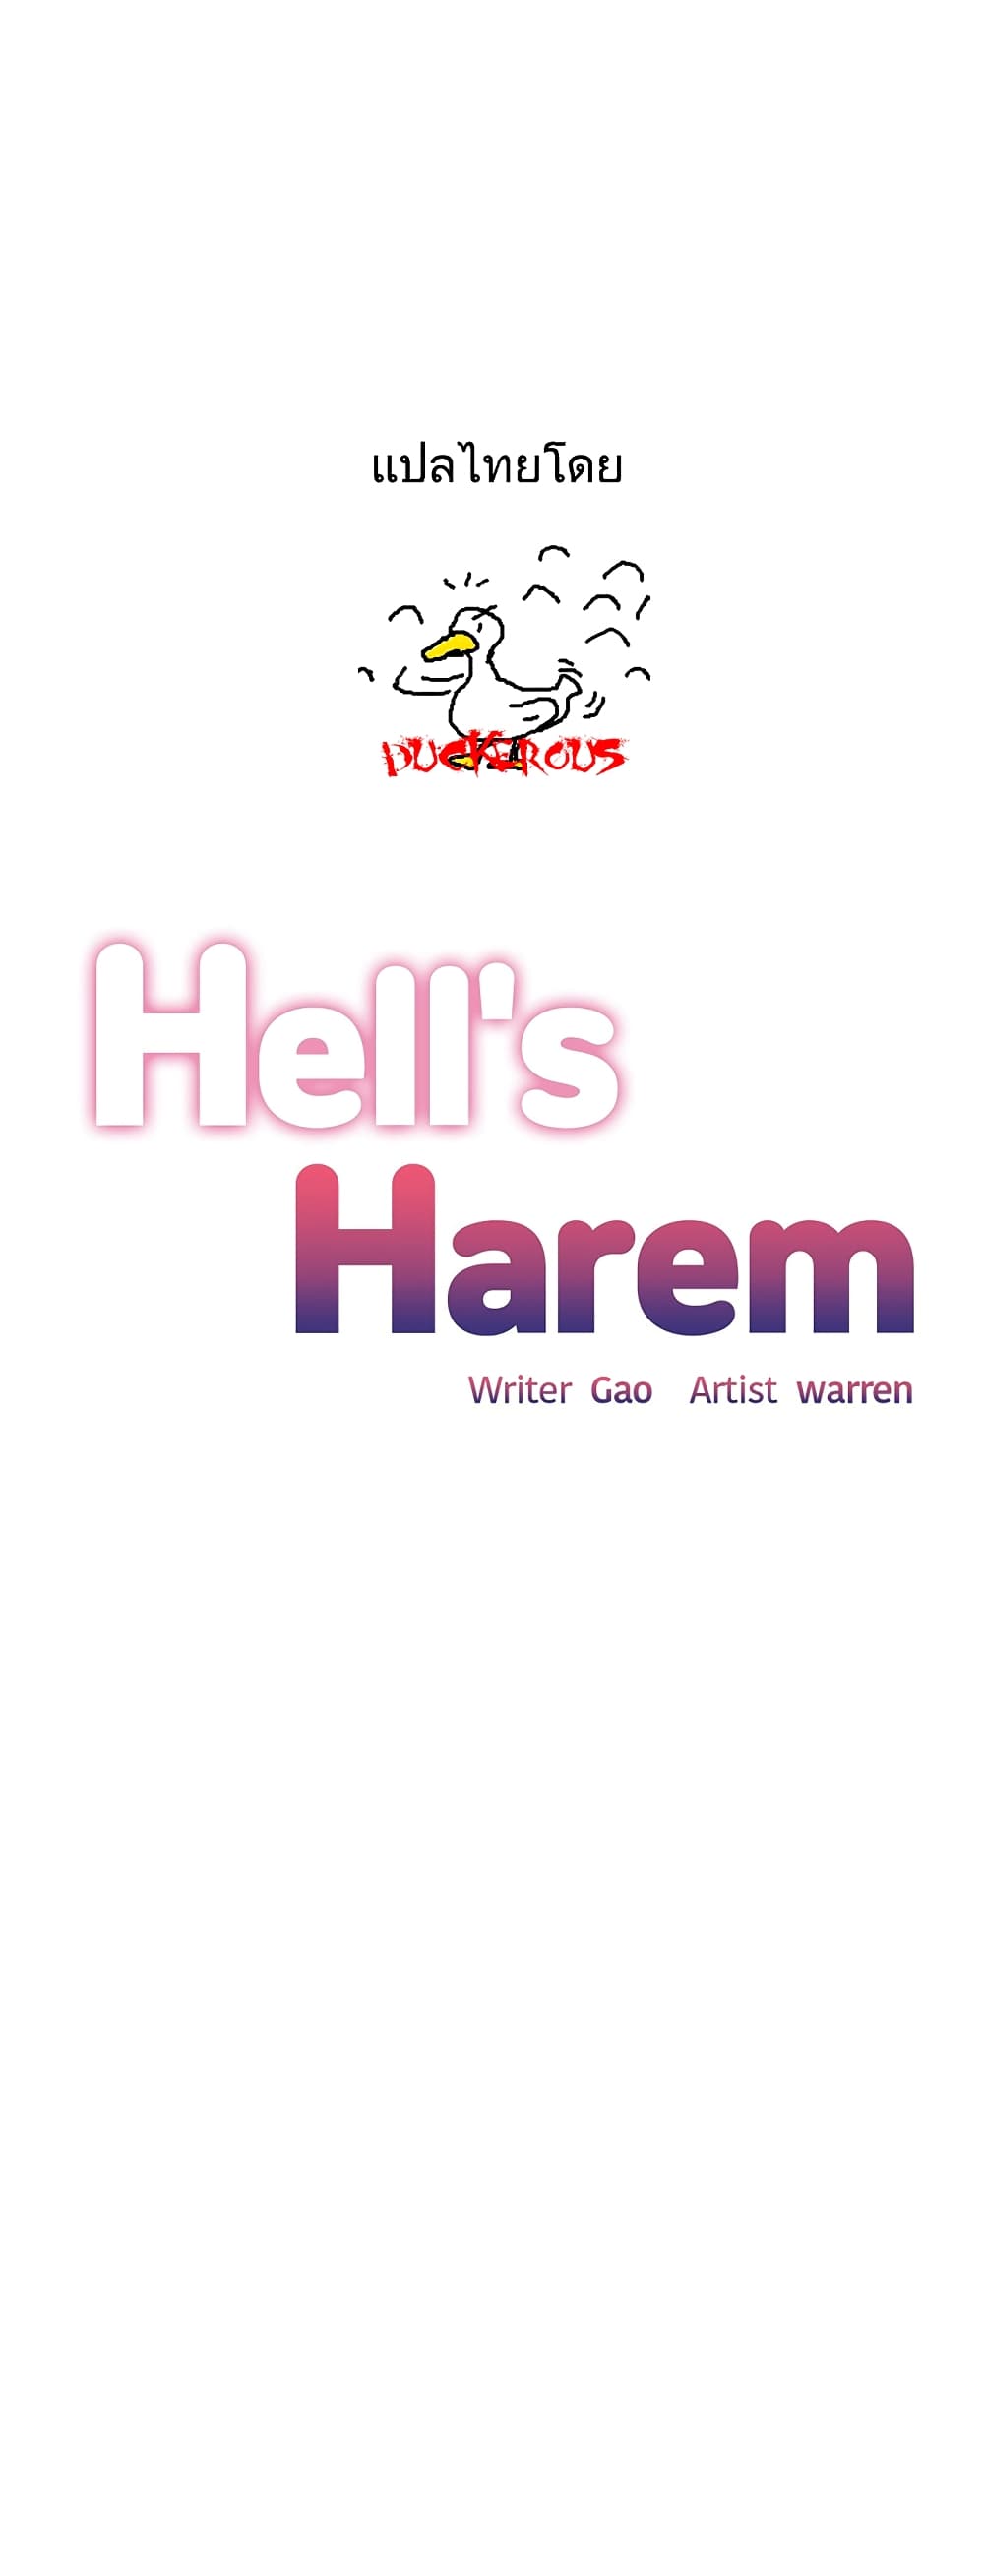 Hell's Harem 37 (1)